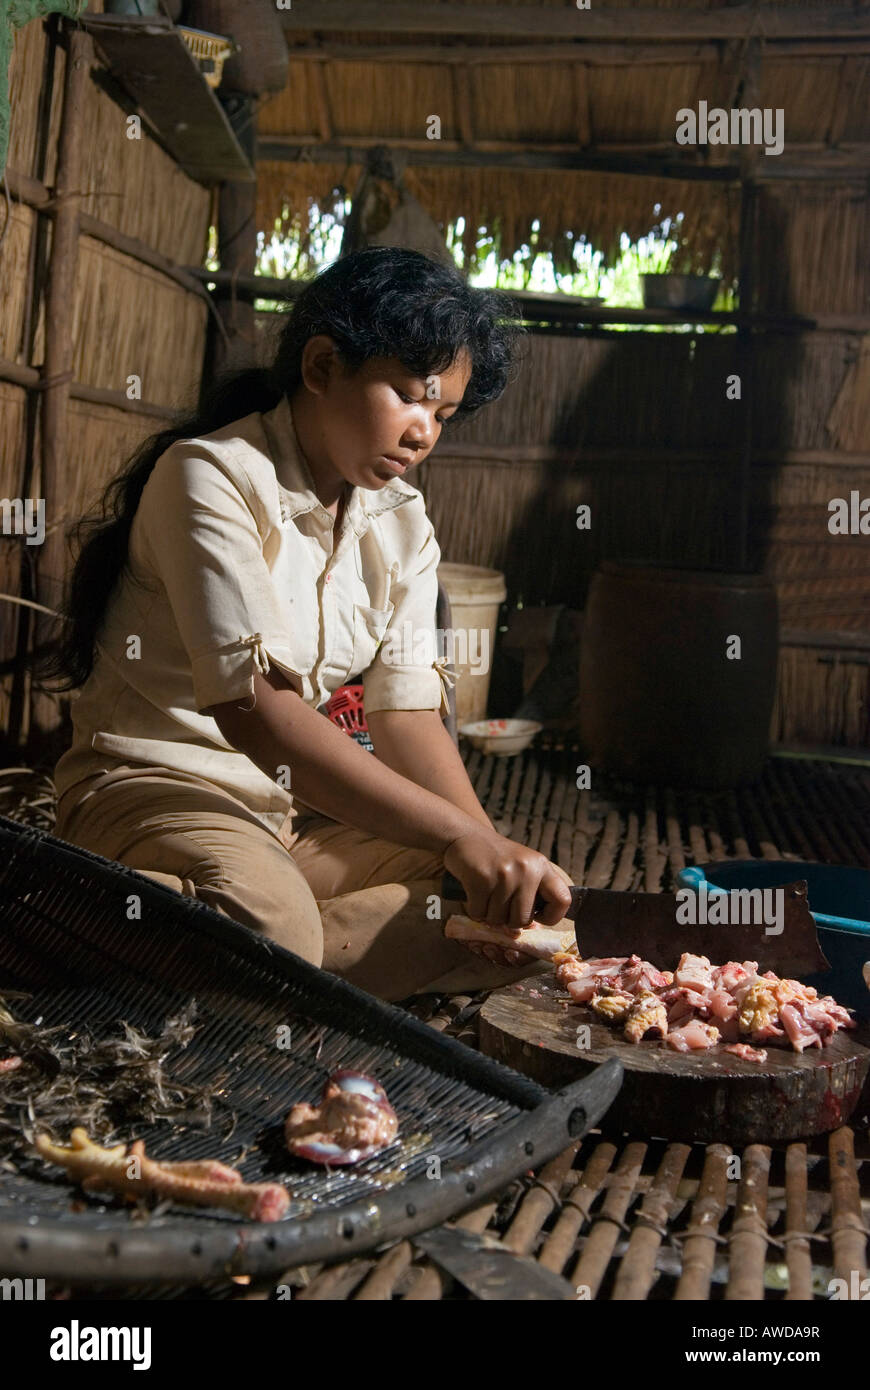 Frau Junge zerlegt ein Huehnchen en einer traditionellen kambodschanischen Kueche, provincia de Koh Kong, Kambodscha Foto de stock